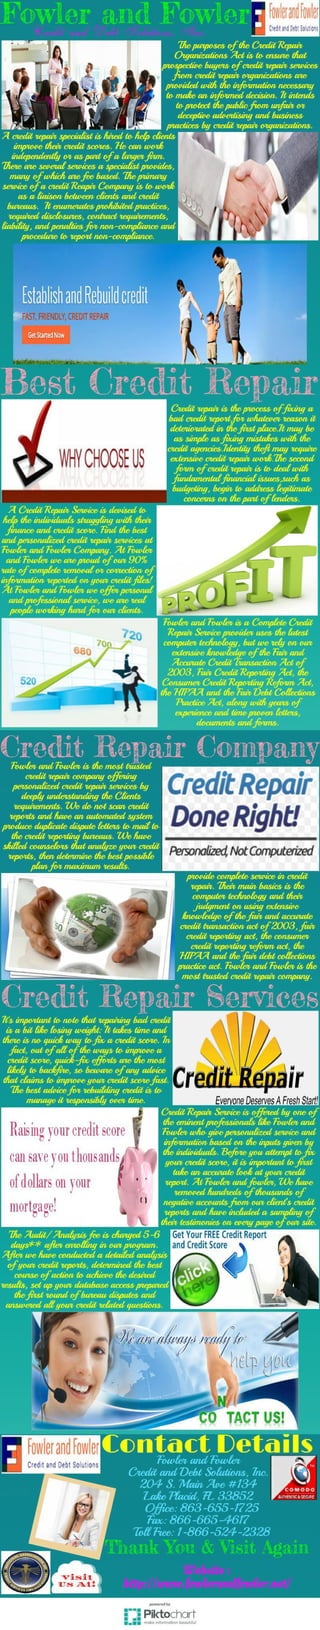 Best credit repair service